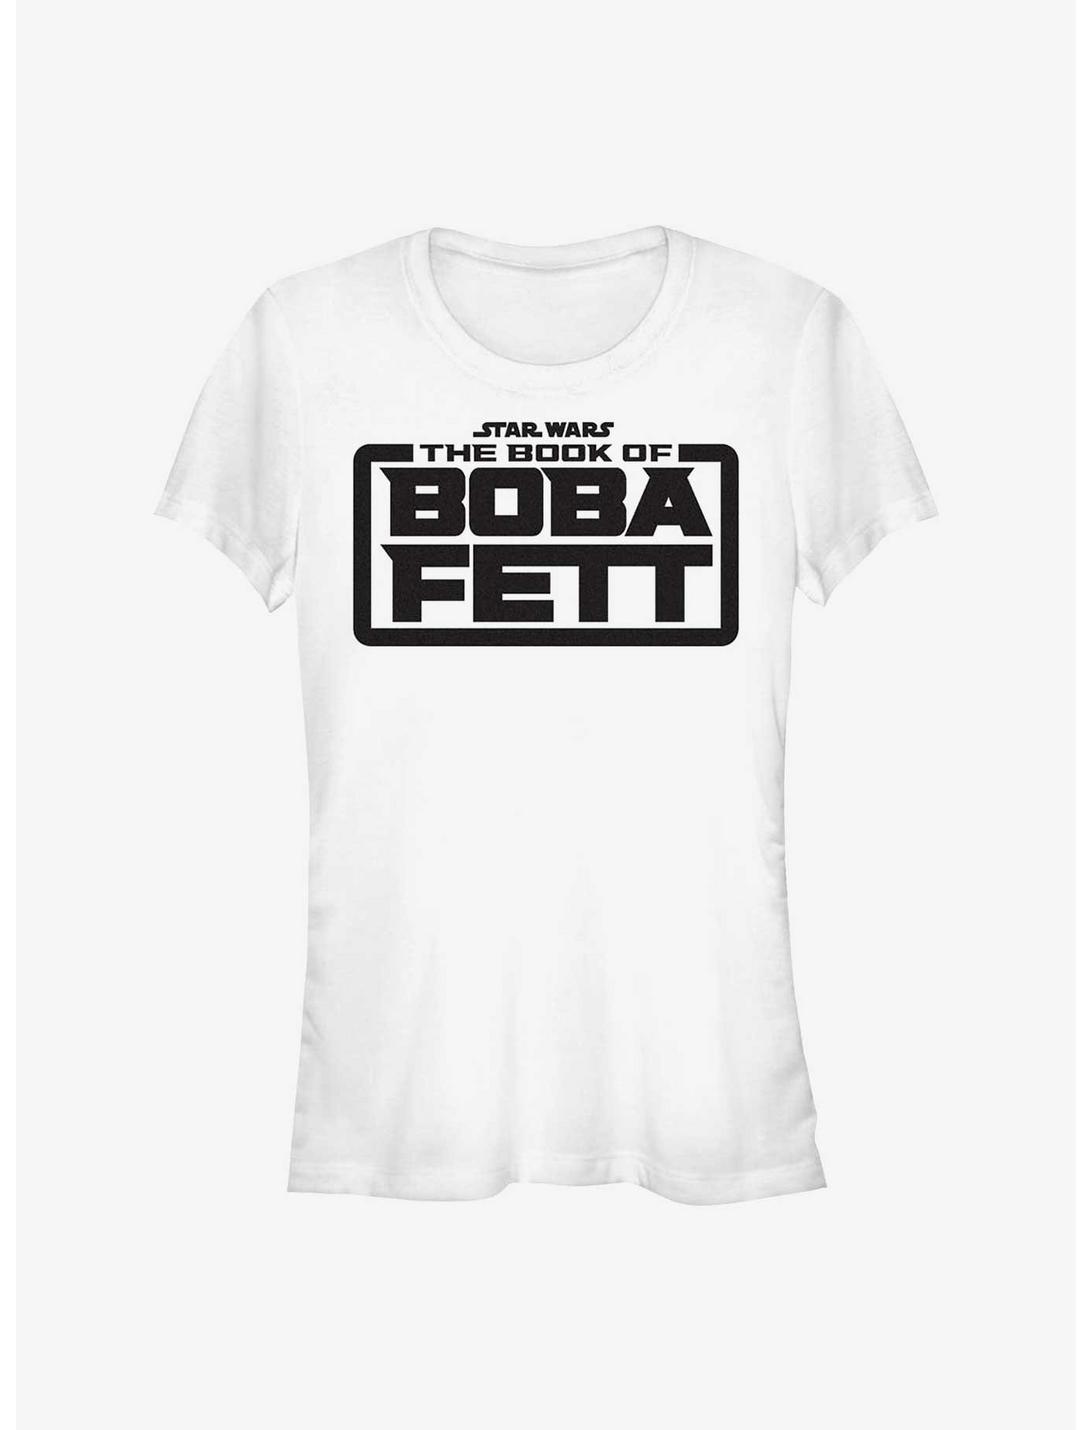 Star Wars The Book of Boba Fett - Basic Logo Girls T-Shirt, WHITE, hi-res